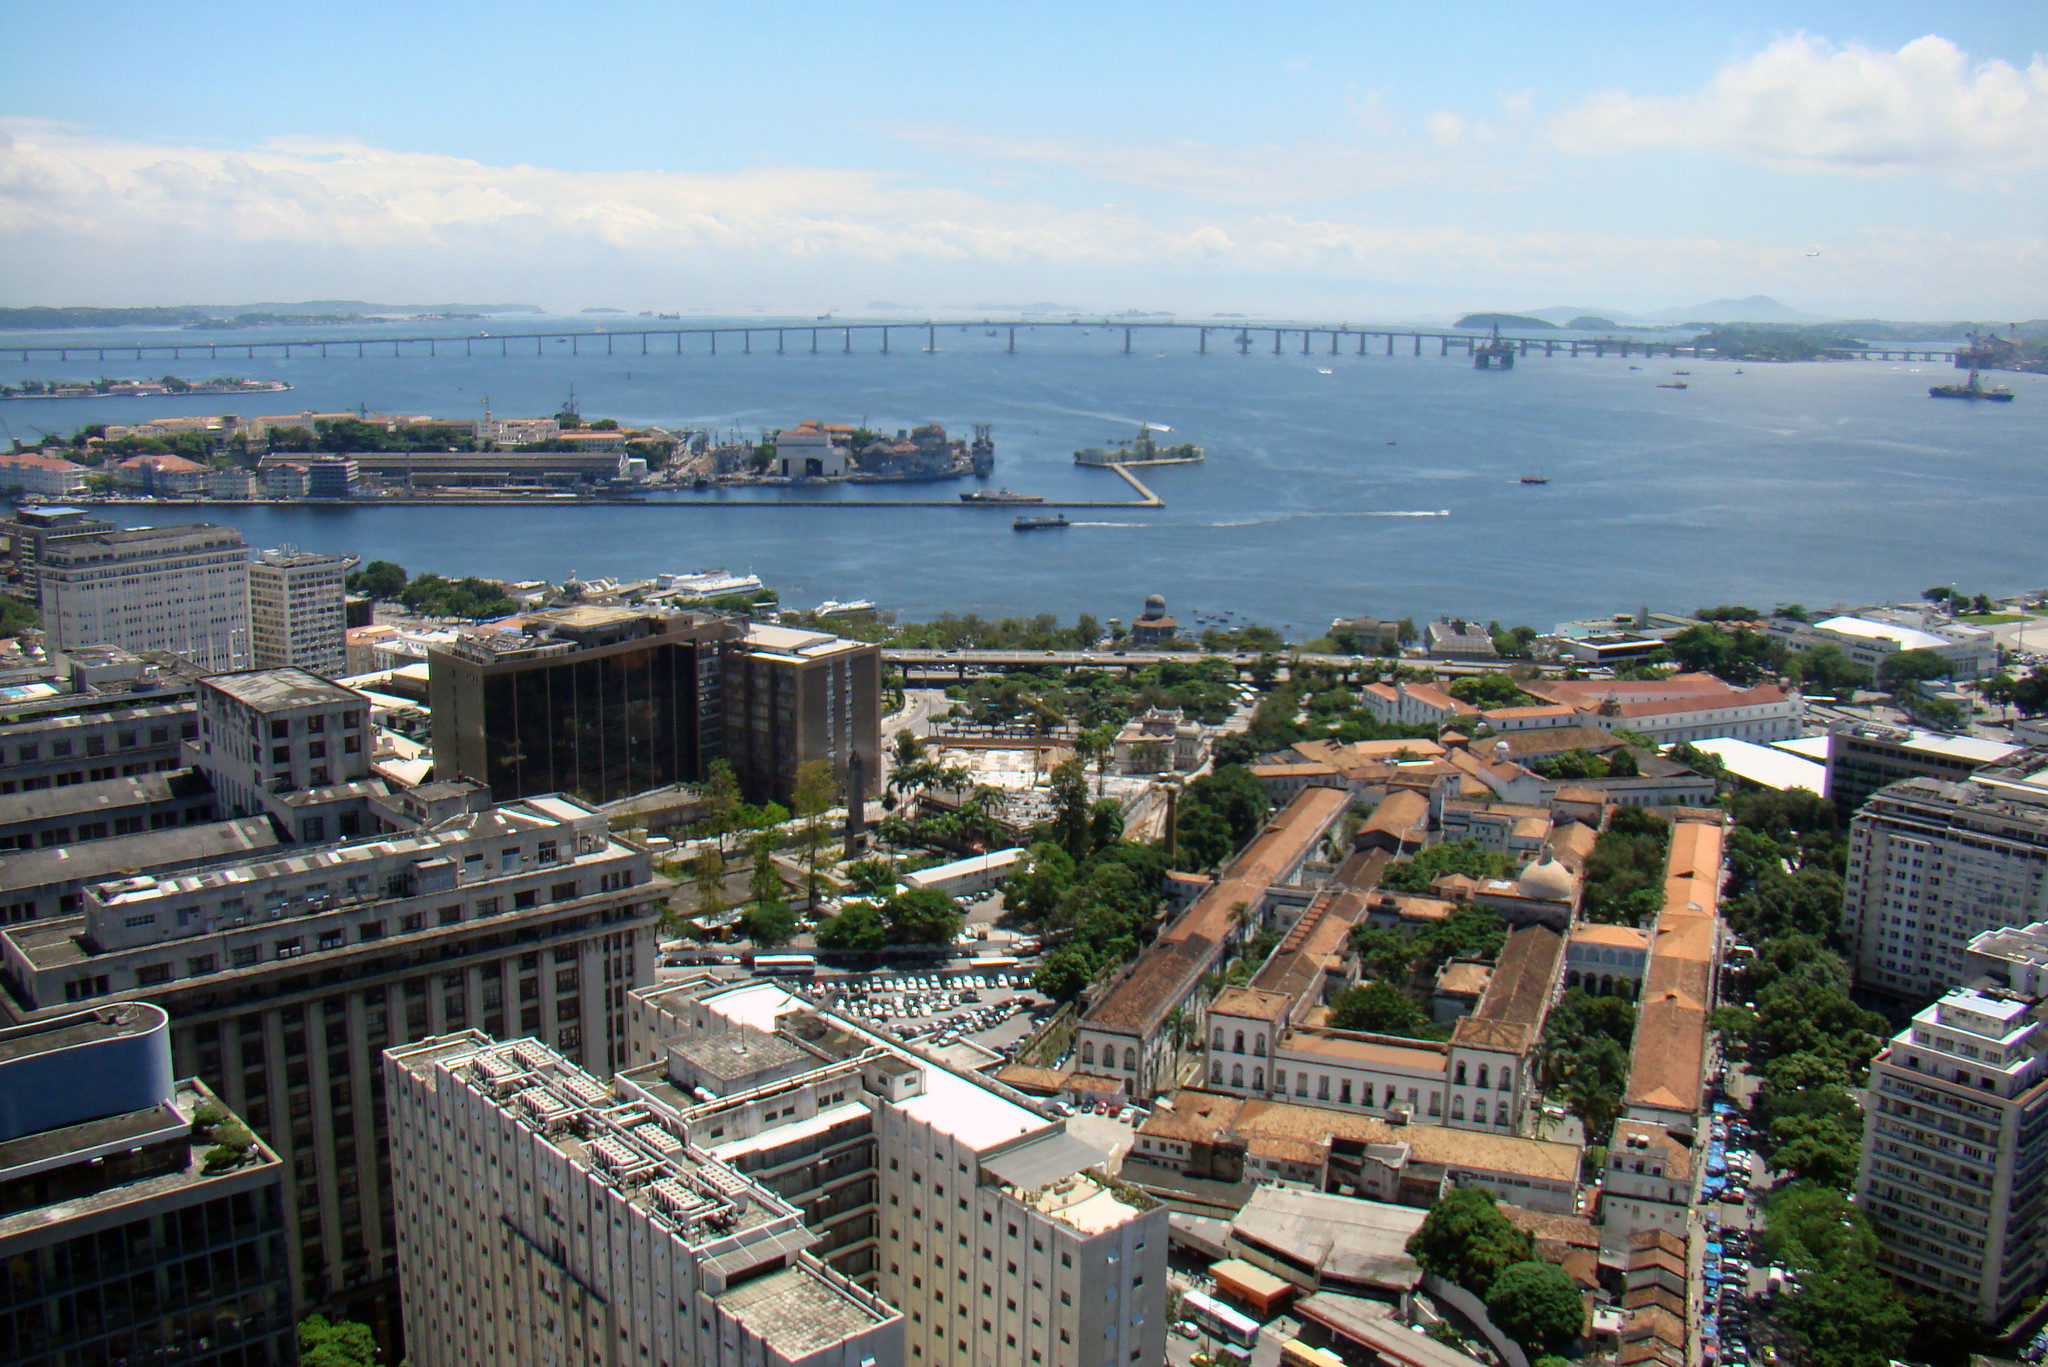 Maior parte dos estados brasileiros tem políticas ou programas de transição energética, aponta mapeamento do MME. Na imagem: Vista de área portuária no Centro do Rio de Janeiro (Foto: Rodrigo Soldon/Flickr)